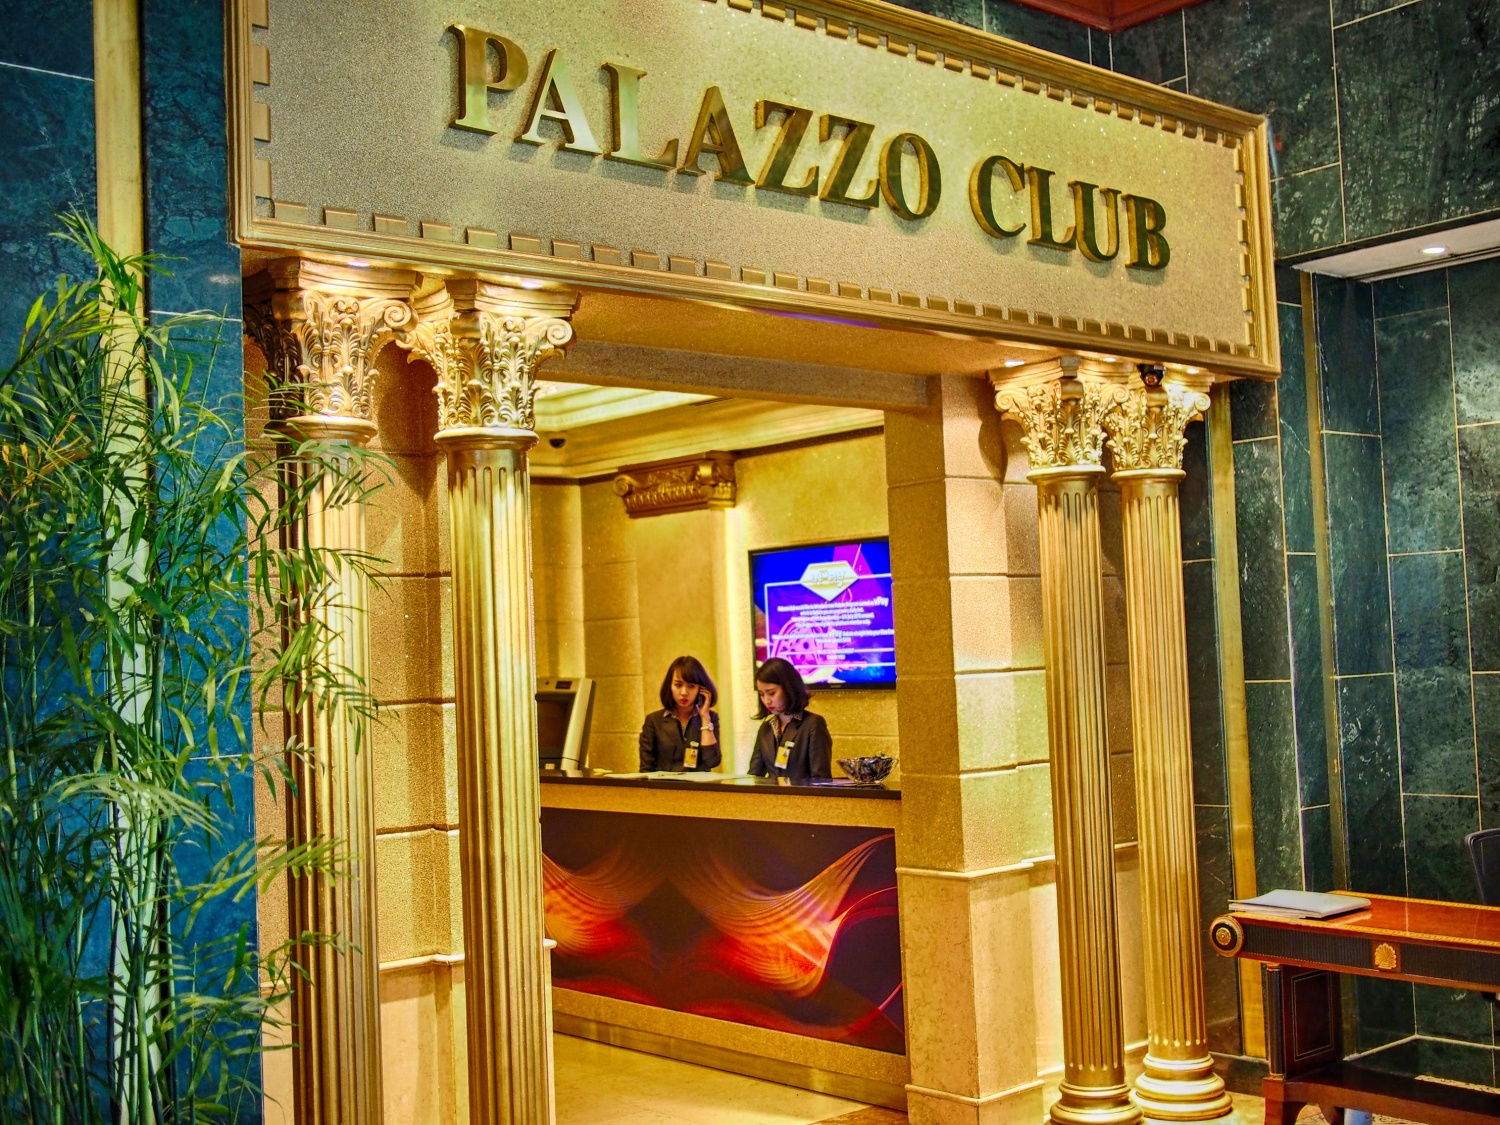 パラッツオクラブ(PALAZZO CLUB) | ベトナム生活・観光情報ナビ[ベトナビ]